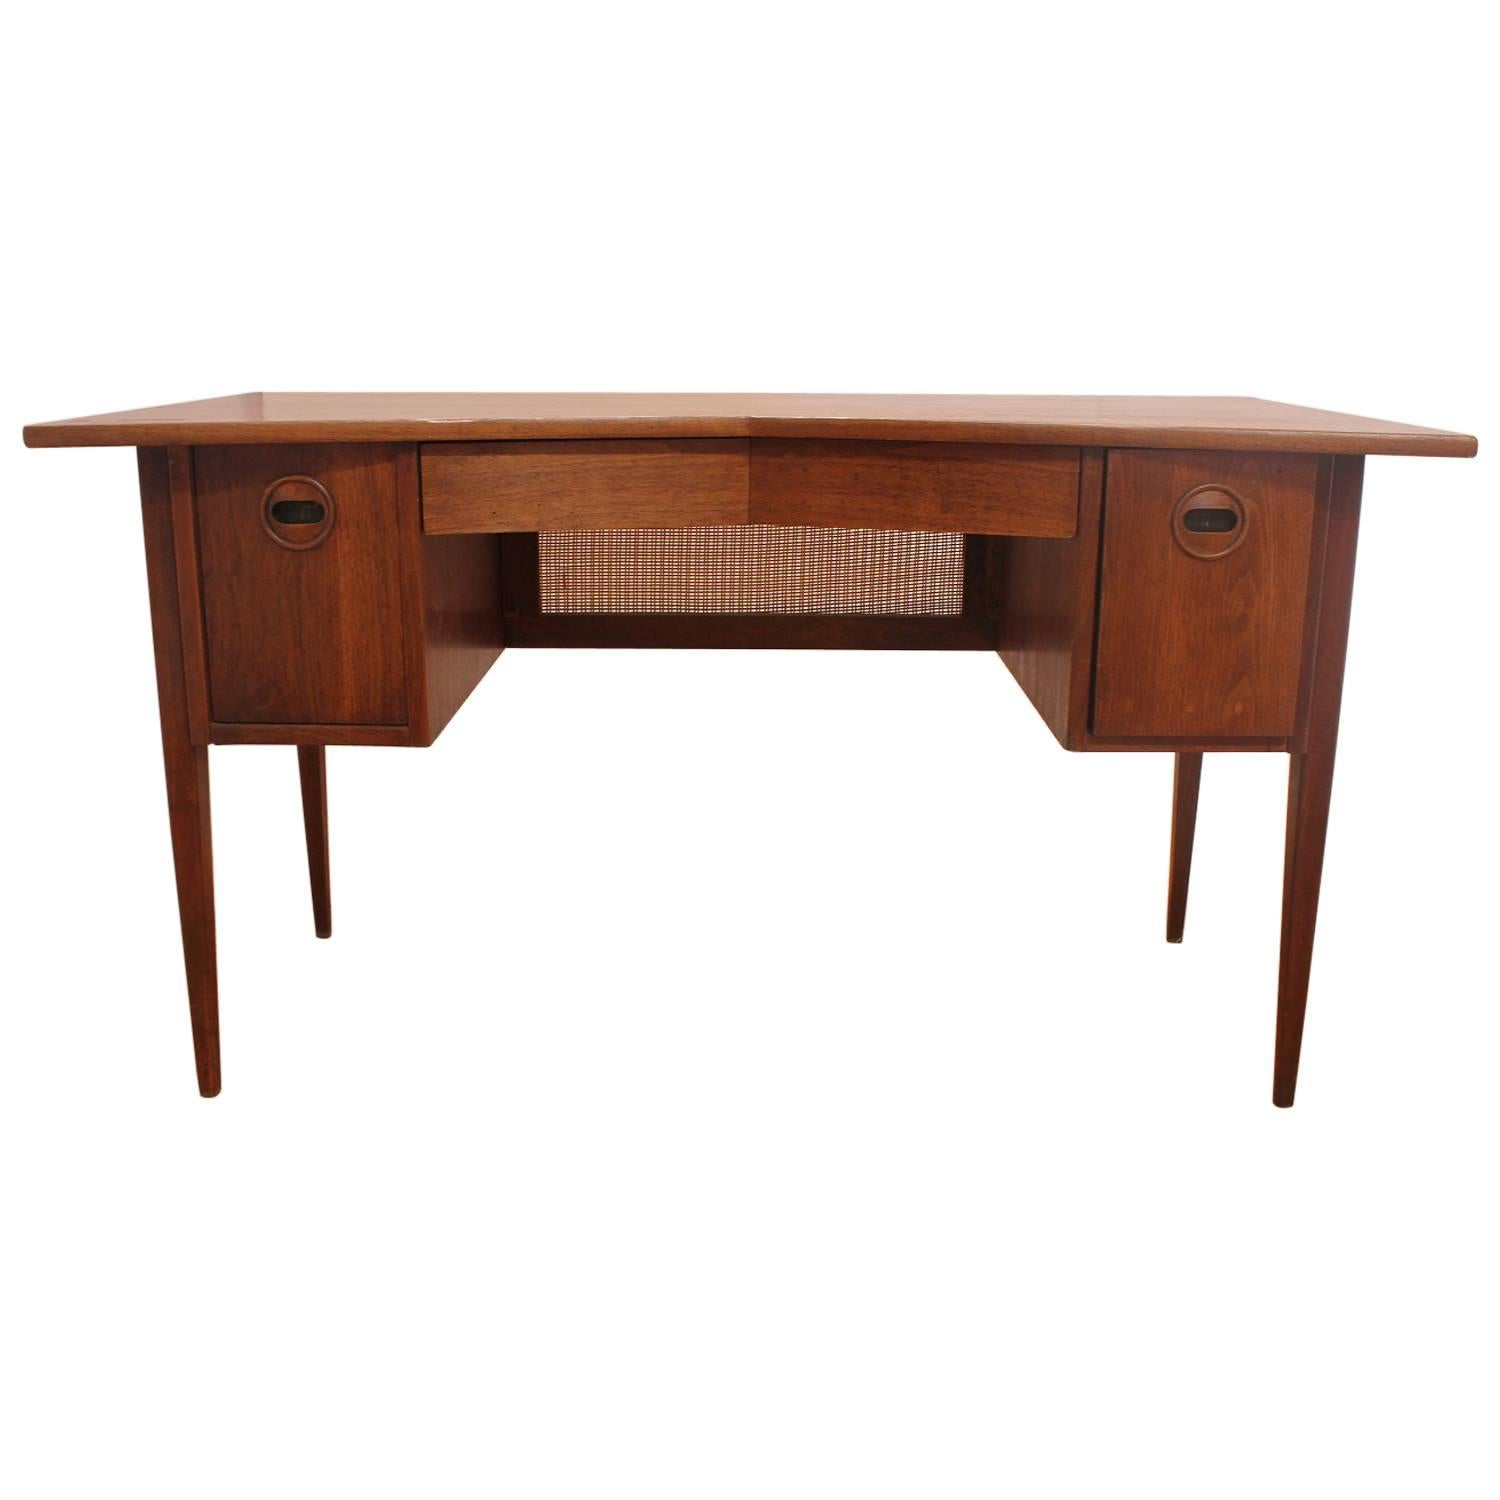 Stylish Walnut Mid-Century Desk by Edward Wormley for Dunbar